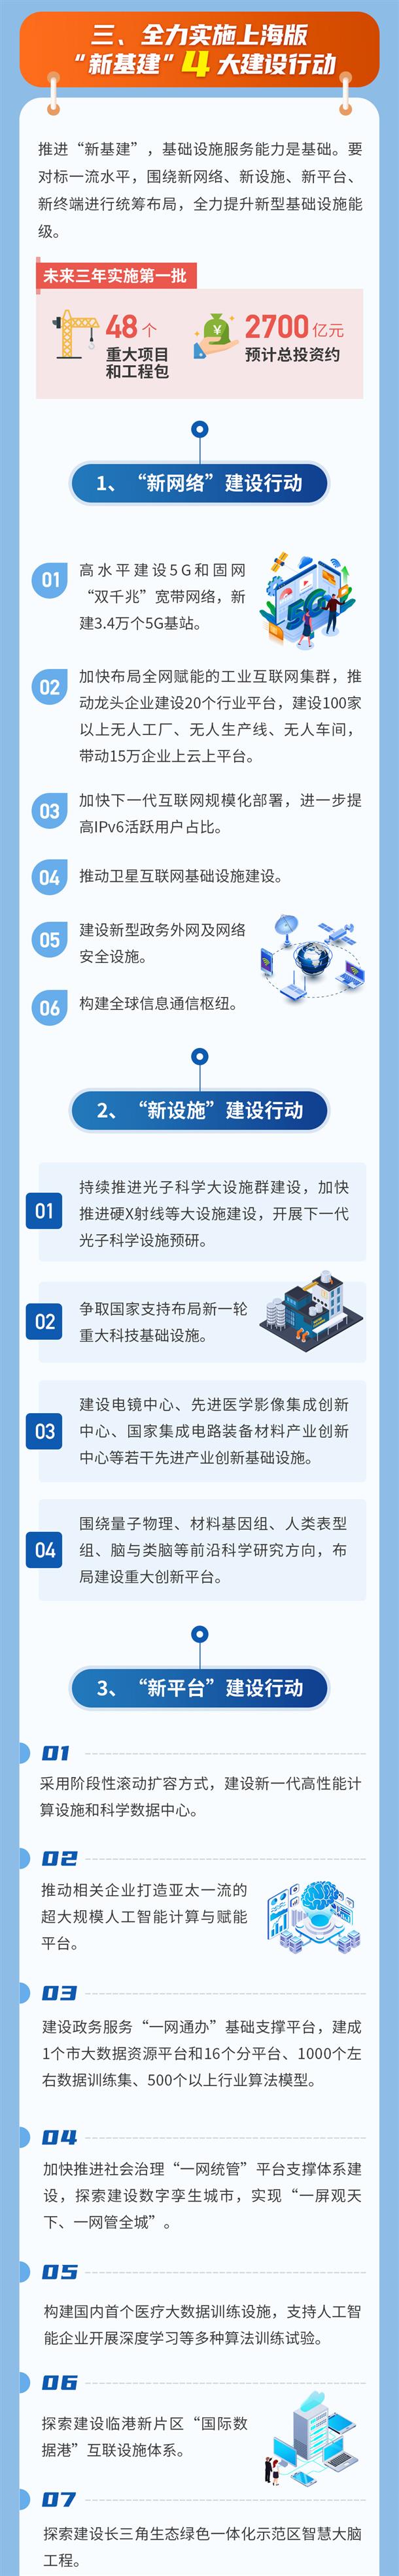 一图读懂上海版“新基建”行动方案